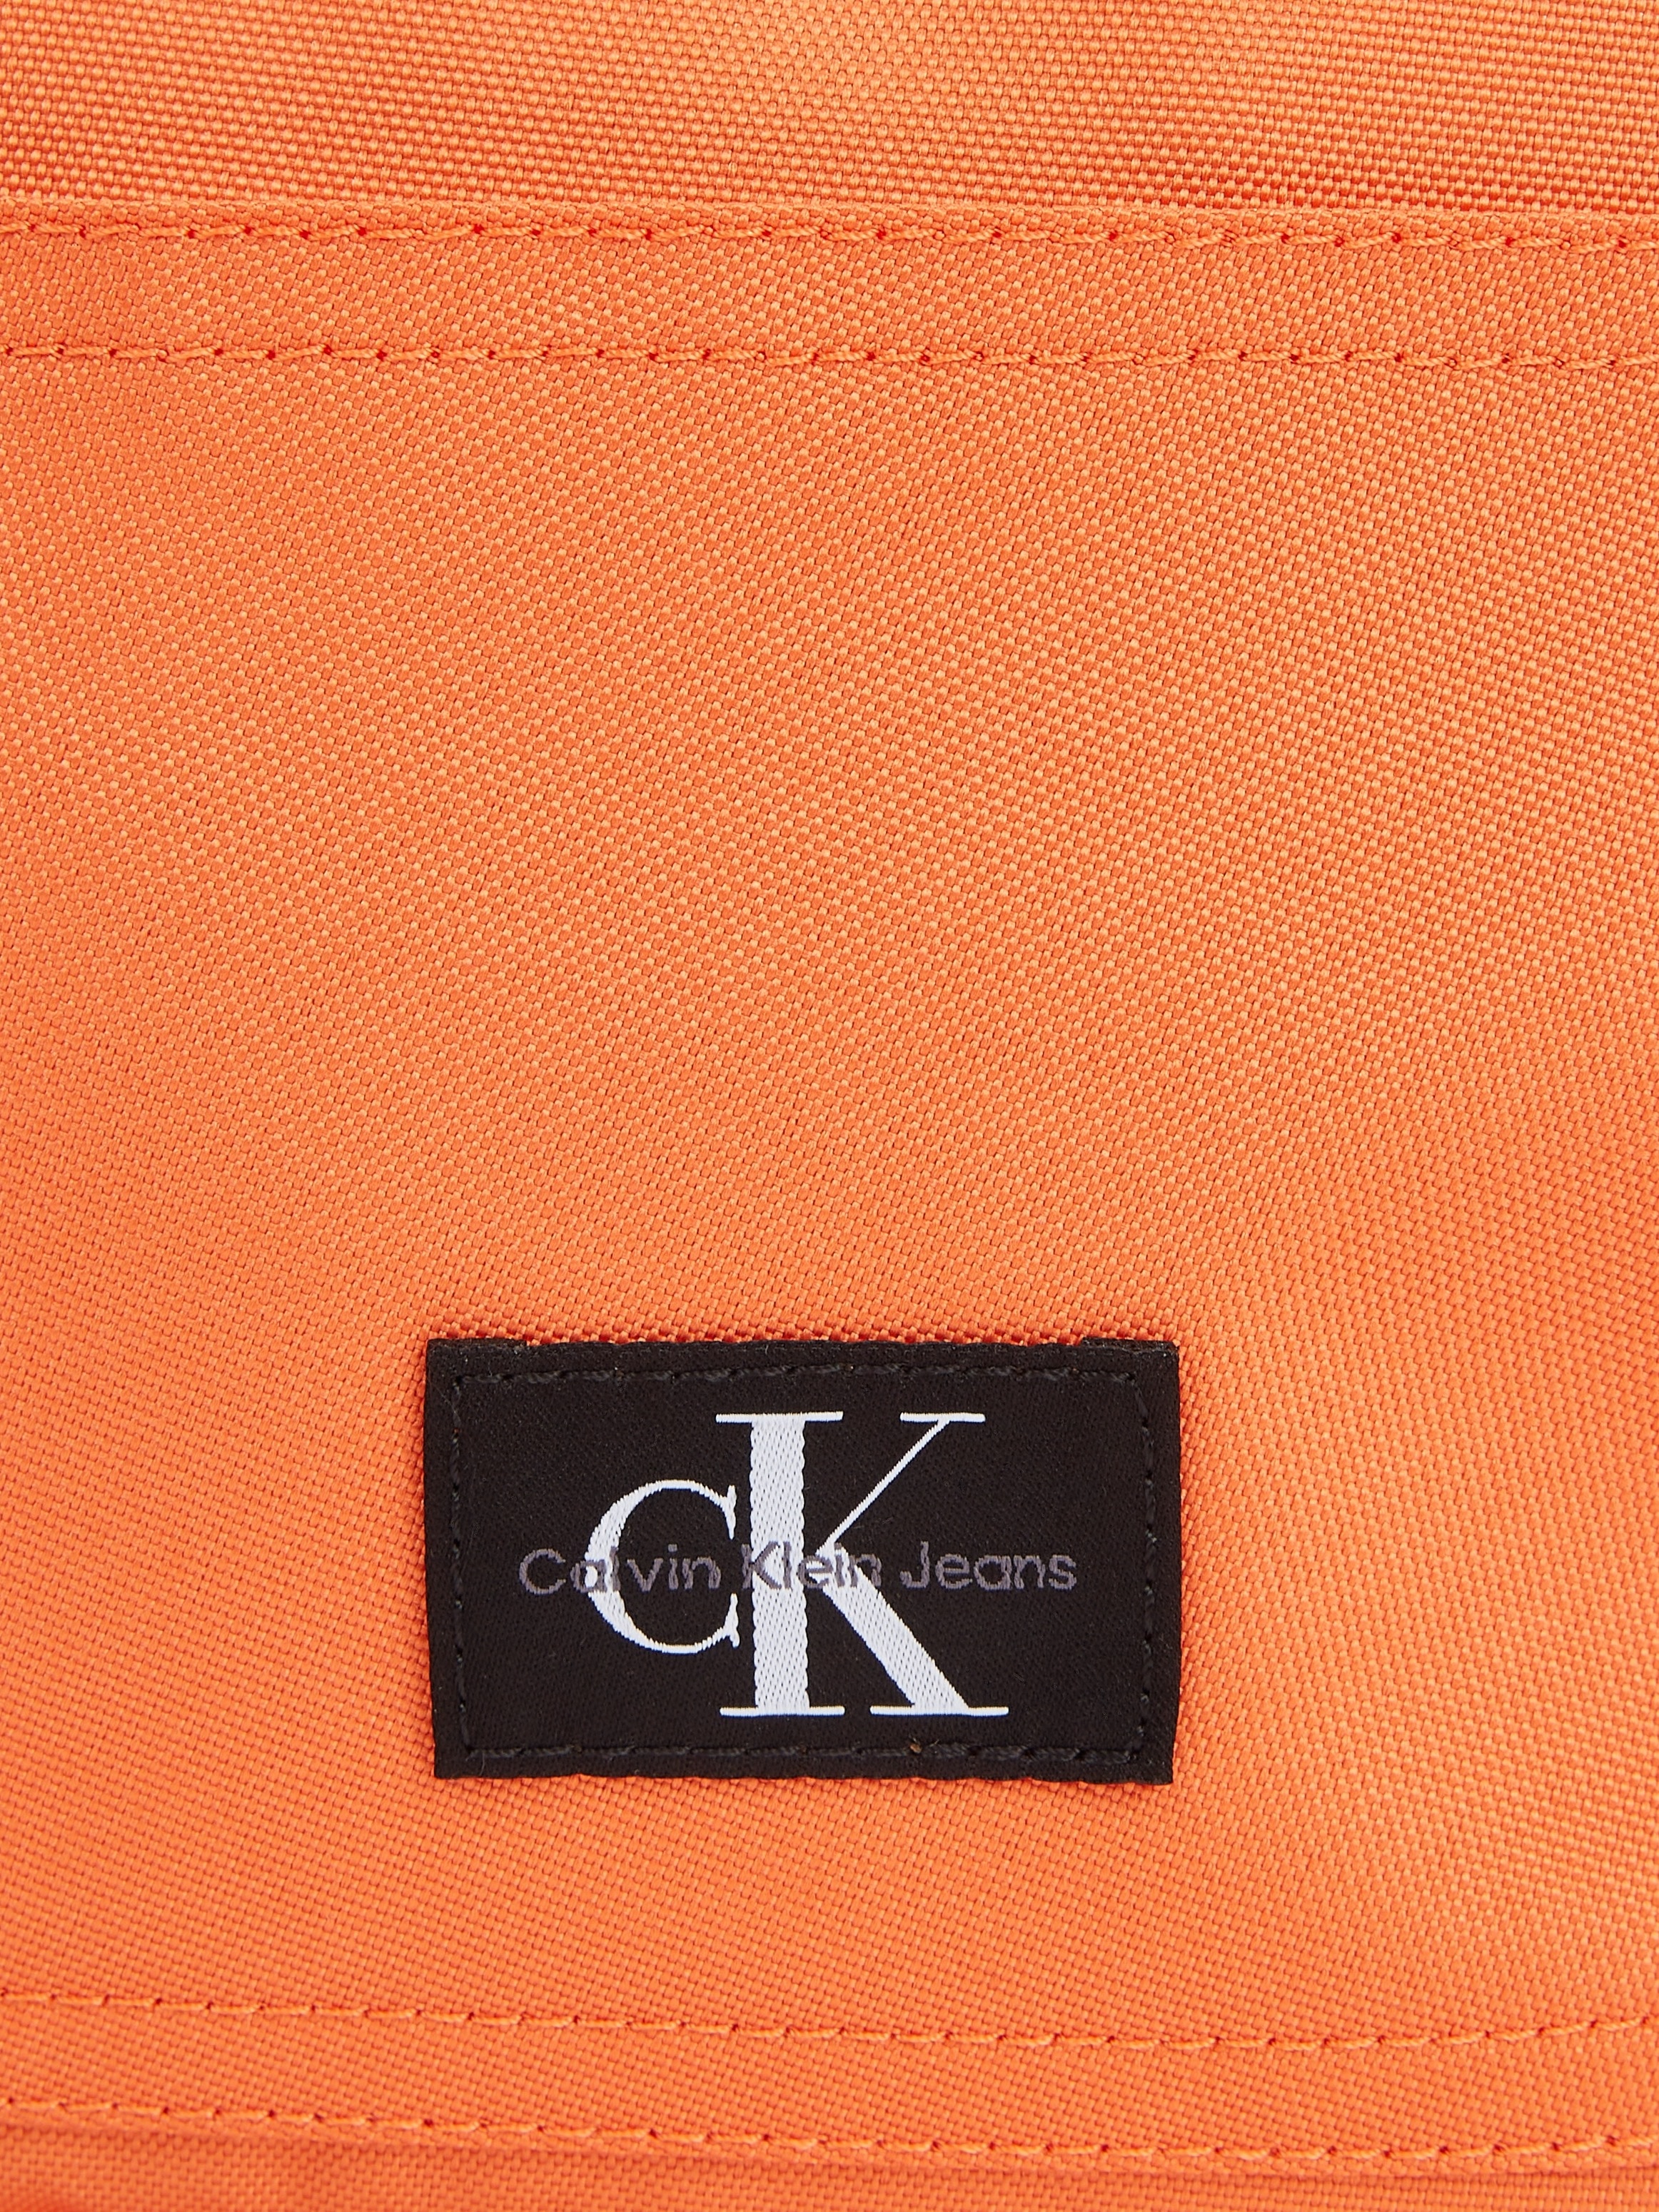 Calvin Klein bestellen »SPORT für Jeans ESSENTIALS BP40 | W«, BAUR Design in Cityrucksack dezentem